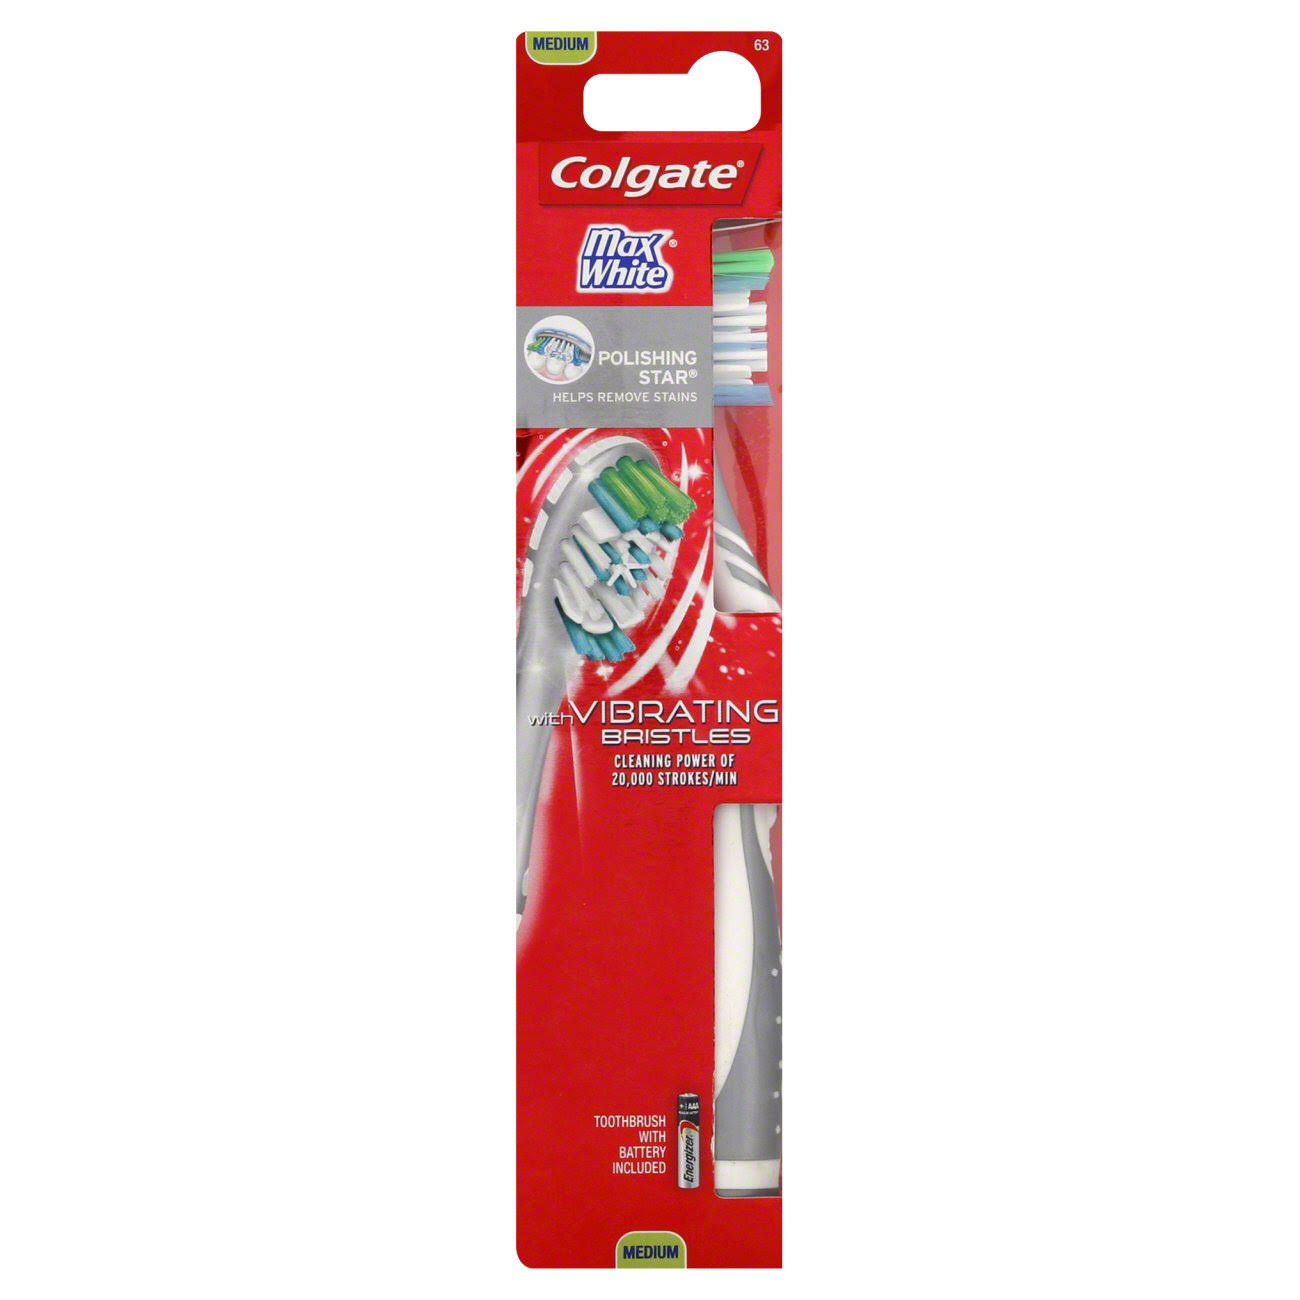 Colgate Max White Sonic Power Toothbrush, Powered, Medium 63